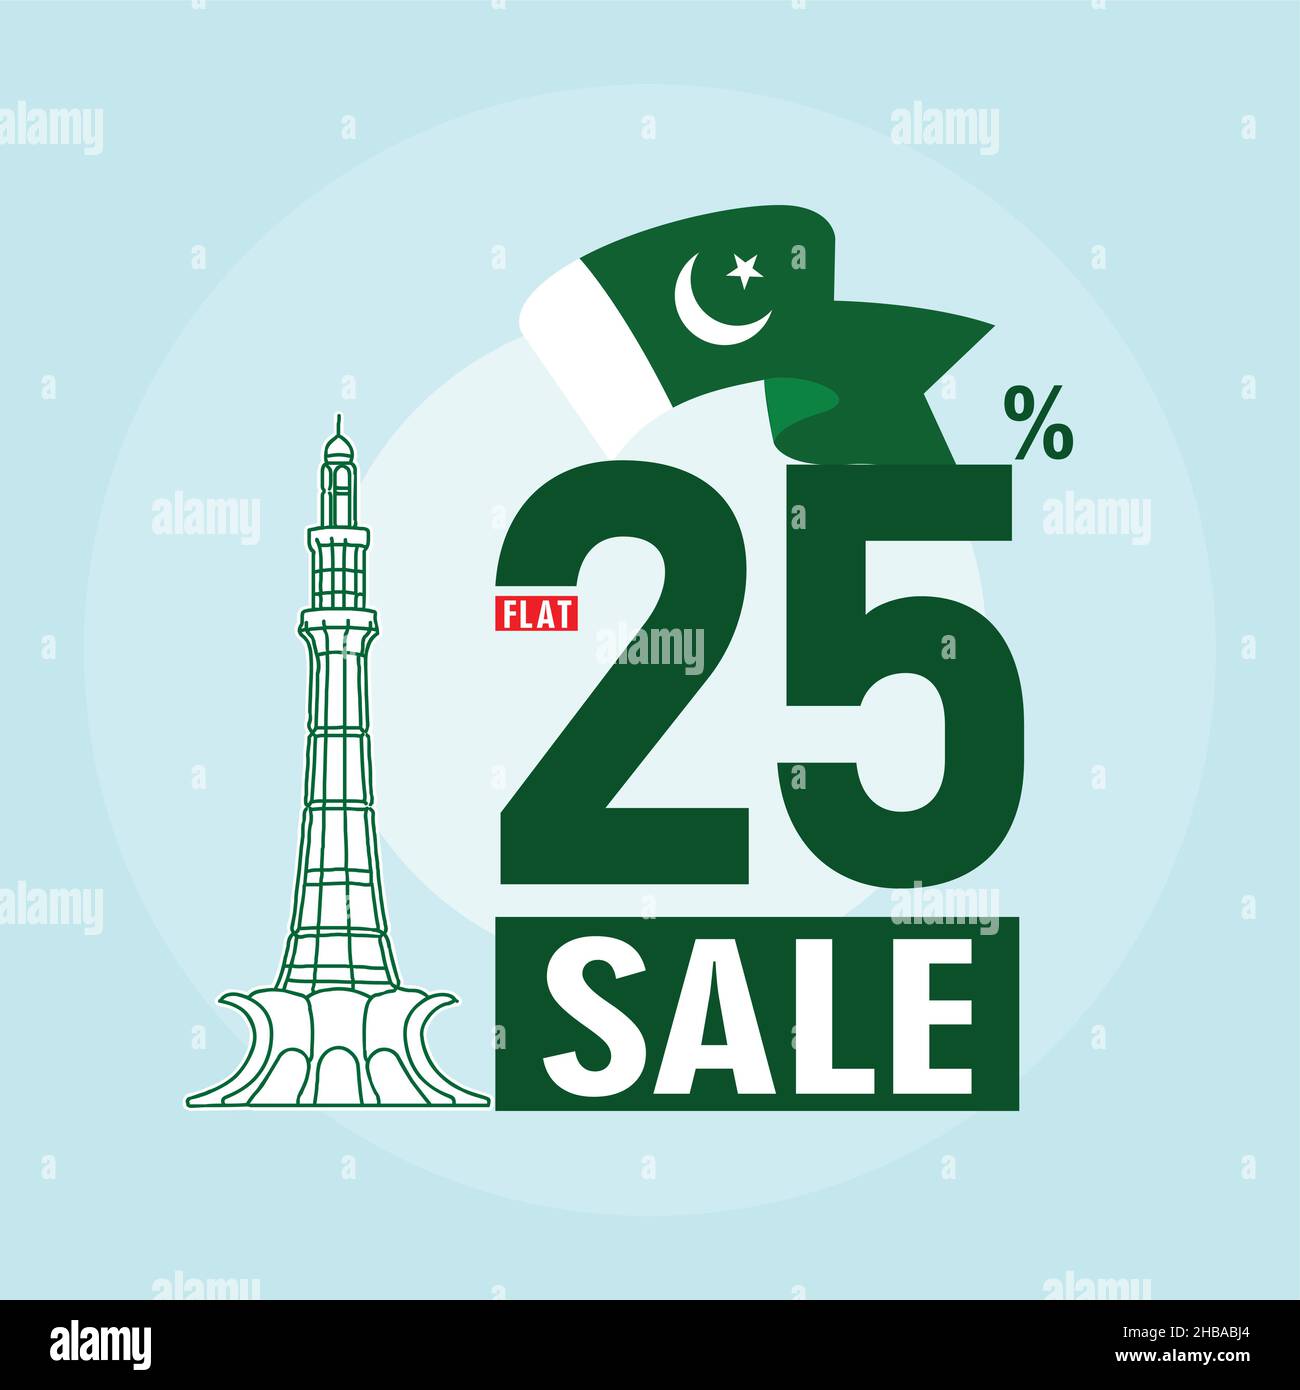 25 dicembre Quaid e Azam giorno concetto di vendita con il 25% di sconto promozionale scatole regalo con forte Lahore Illustrazione Vettoriale